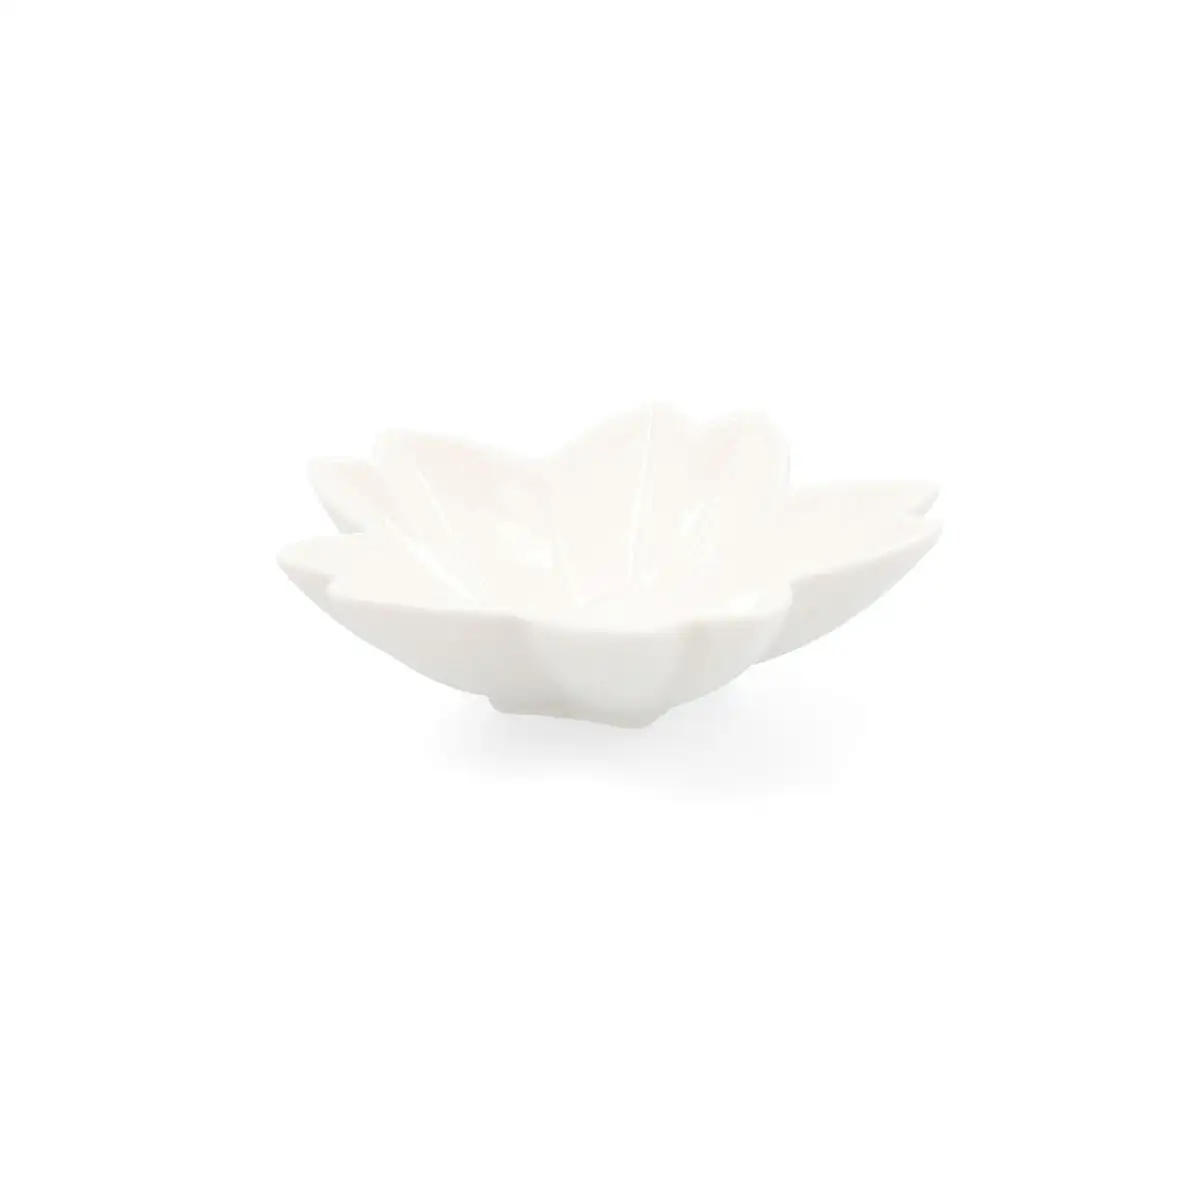 Plateau aperitif quid select fleur ceramique blanc 6 unites pack 6x _3247. DIAYTAR SENEGAL - Là où Chaque Produit Est une Trouvaille. Explorez notre sélection minutieuse et découvrez des articles qui correspondent à votre style de vie et à vos aspirations.